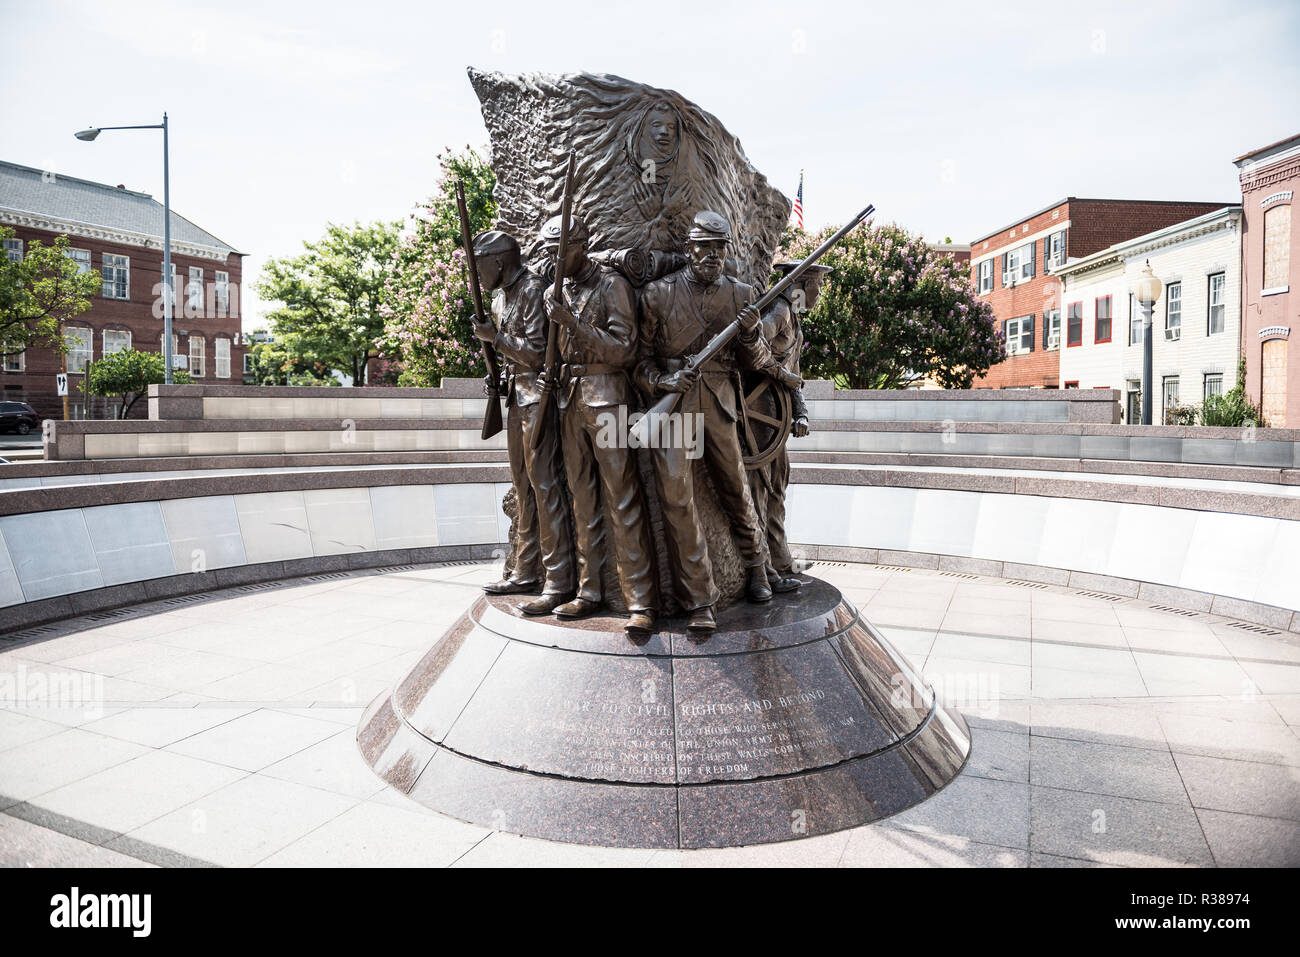 WASHINGTON, DC - African American Civil War Memorial commemora il servizio di 209,145 afro-americano di soldati e circa 7.000 bianco e 2.145 soldati ispanica, pari a circa 220.000, plus approssimativamente 20.000 unsegregated marinai della marina militare, che hanno combattuto per l'Unione nella guerra civile americana, principalmente tra i 175 reggimenti del Stati Uniti truppe colorati. Nel cuore del memorial è una scultura da ed Hamilton ha chiamato lo spirito di libertà. È circondato da pannelli con l'elenco dei nomi di coloro che hanno servito durante la guerra. Il museo è situato nella zona nordovest di Washington DC in U Street tendere Foto Stock